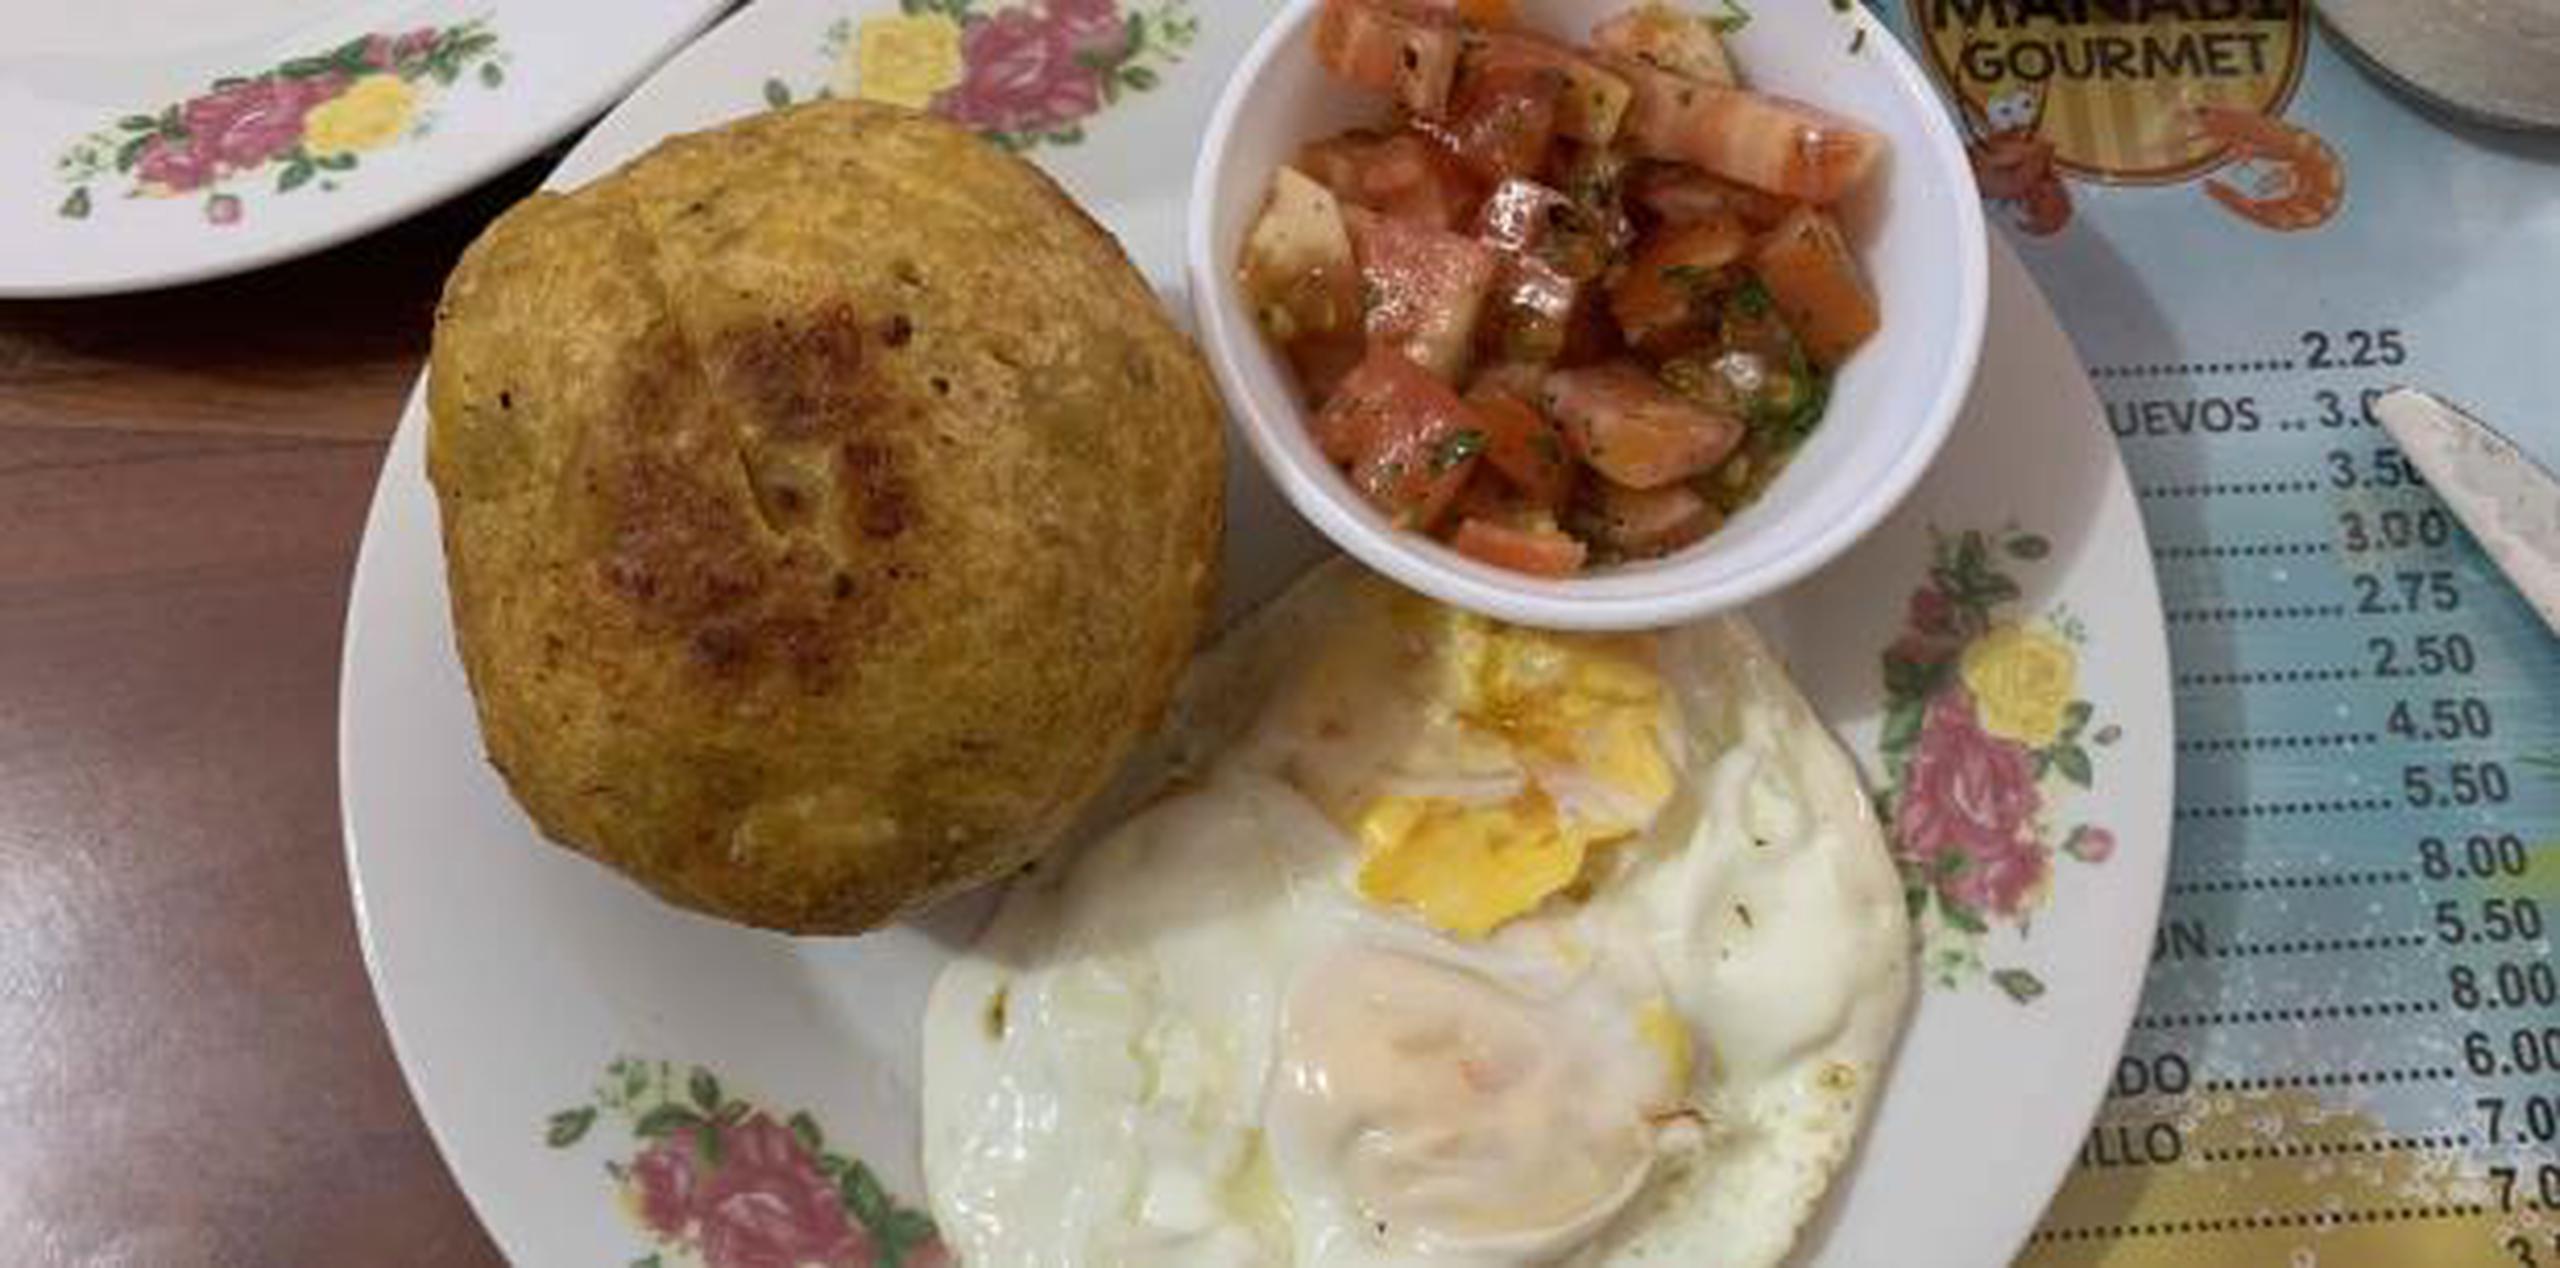 En la foto, el desayuno típico costero con el rico bolón, huevo y tomates picados.  (anaenid.lopez@gfrmedia.com)